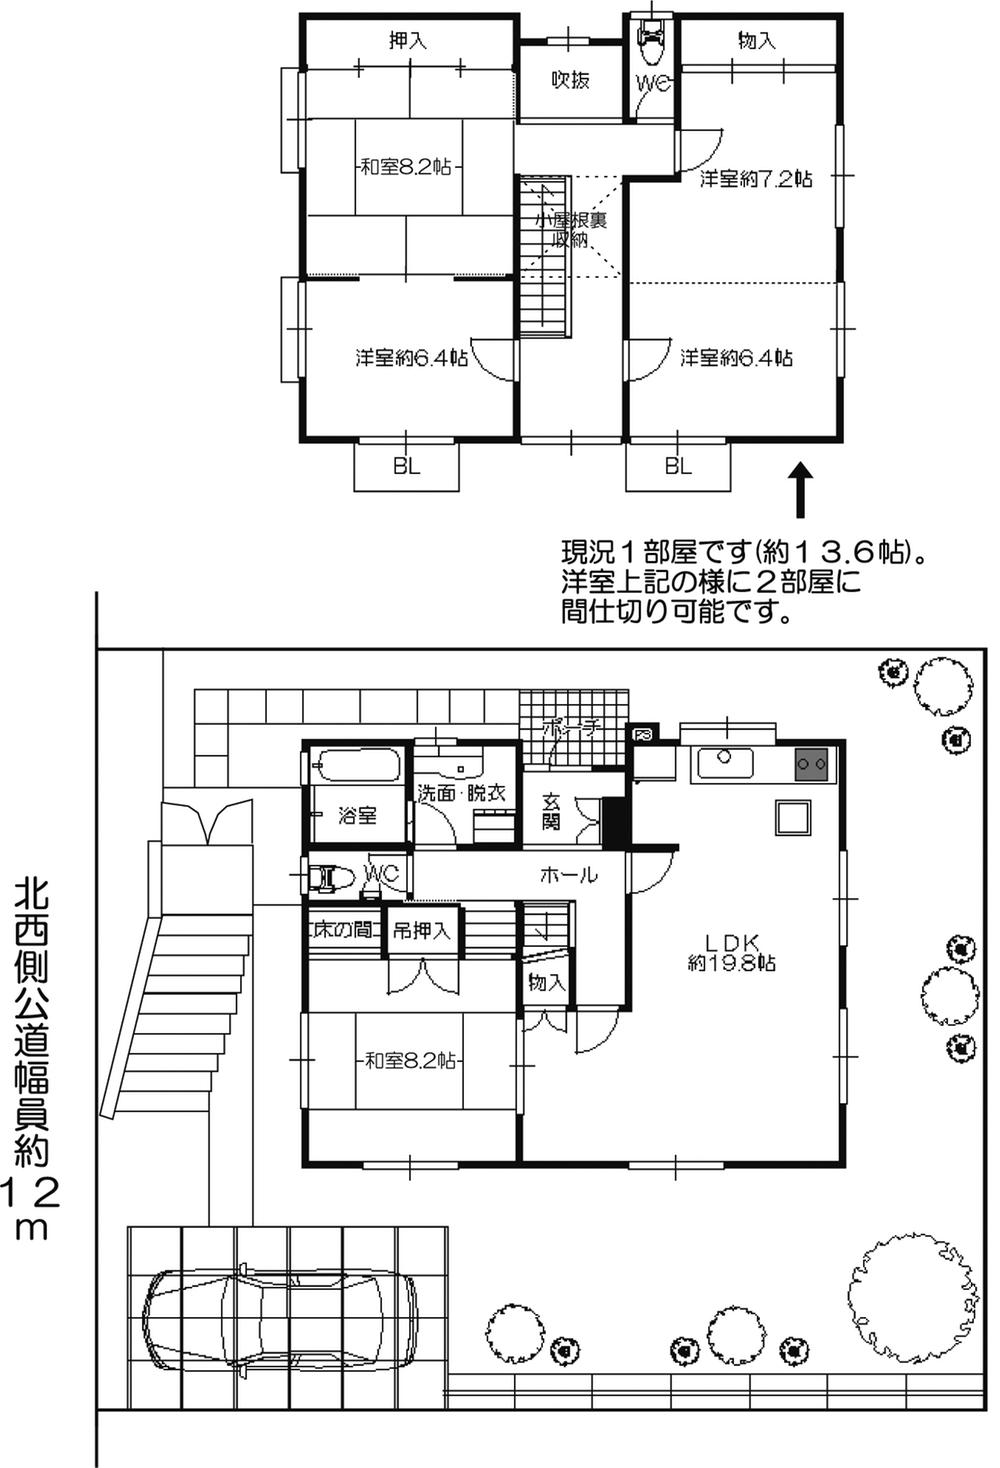 Floor plan. 19,800,000 yen, 5LDK + S (storeroom), Land area 204.21 sq m , Building area 133.76 sq m